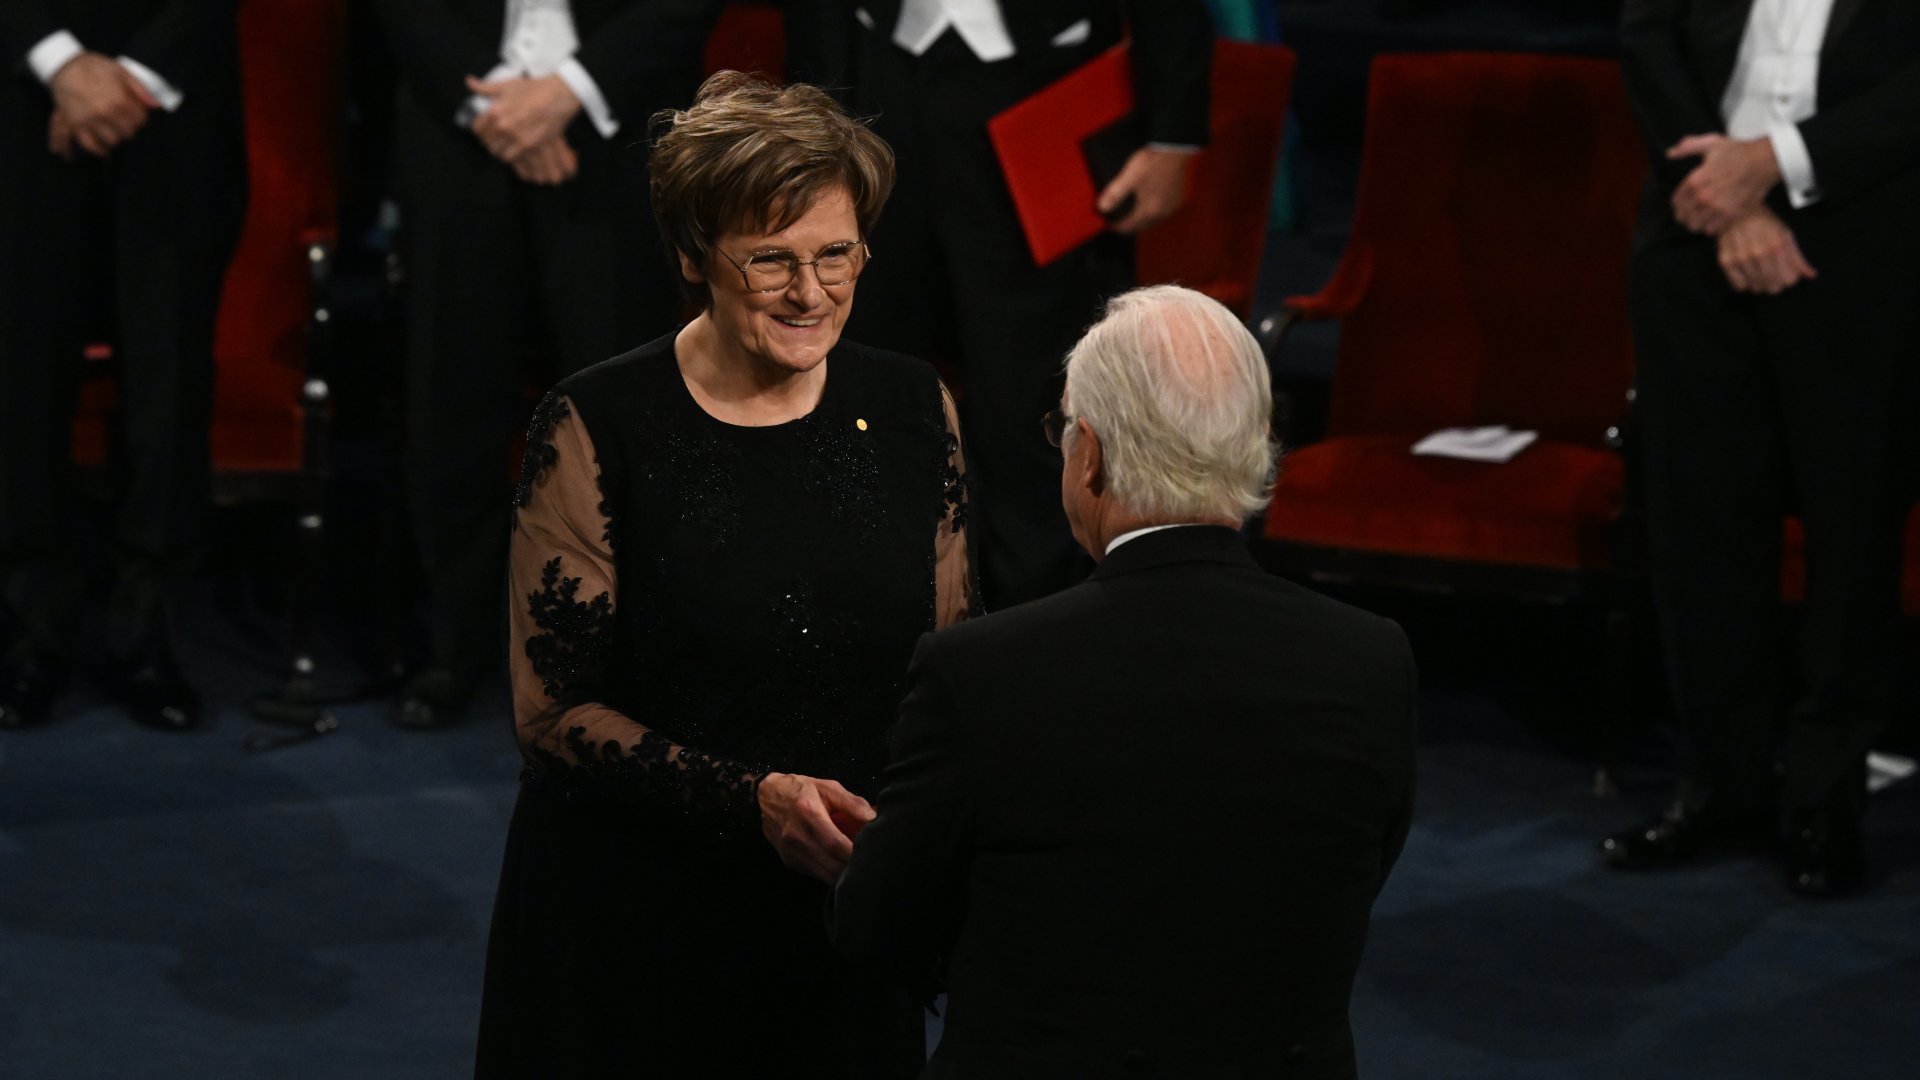 Karikó Katalin biokémikus átveszi az orvosi-élettani Nobel-díjat XVI. Károly Gusztáv svéd királytól a 2023-as Nobel-díjak átadási ünnepségén a stockholmi hangversenyteremben 2023. december 10-én